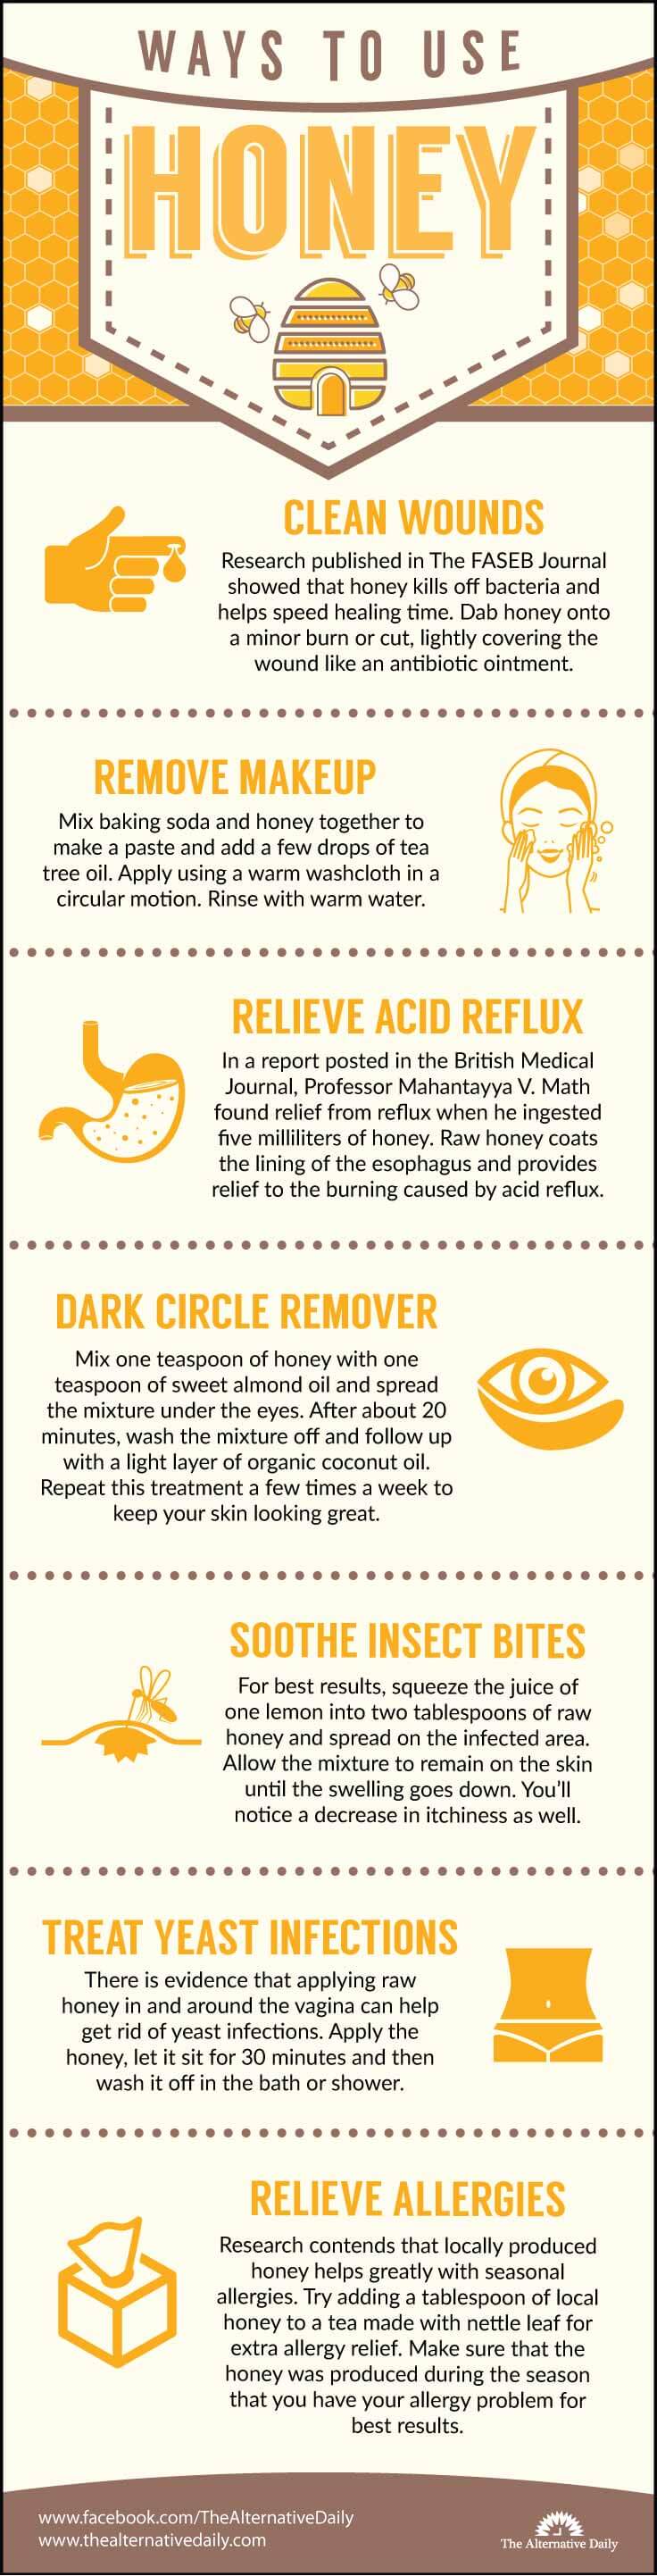 Ways to use honey